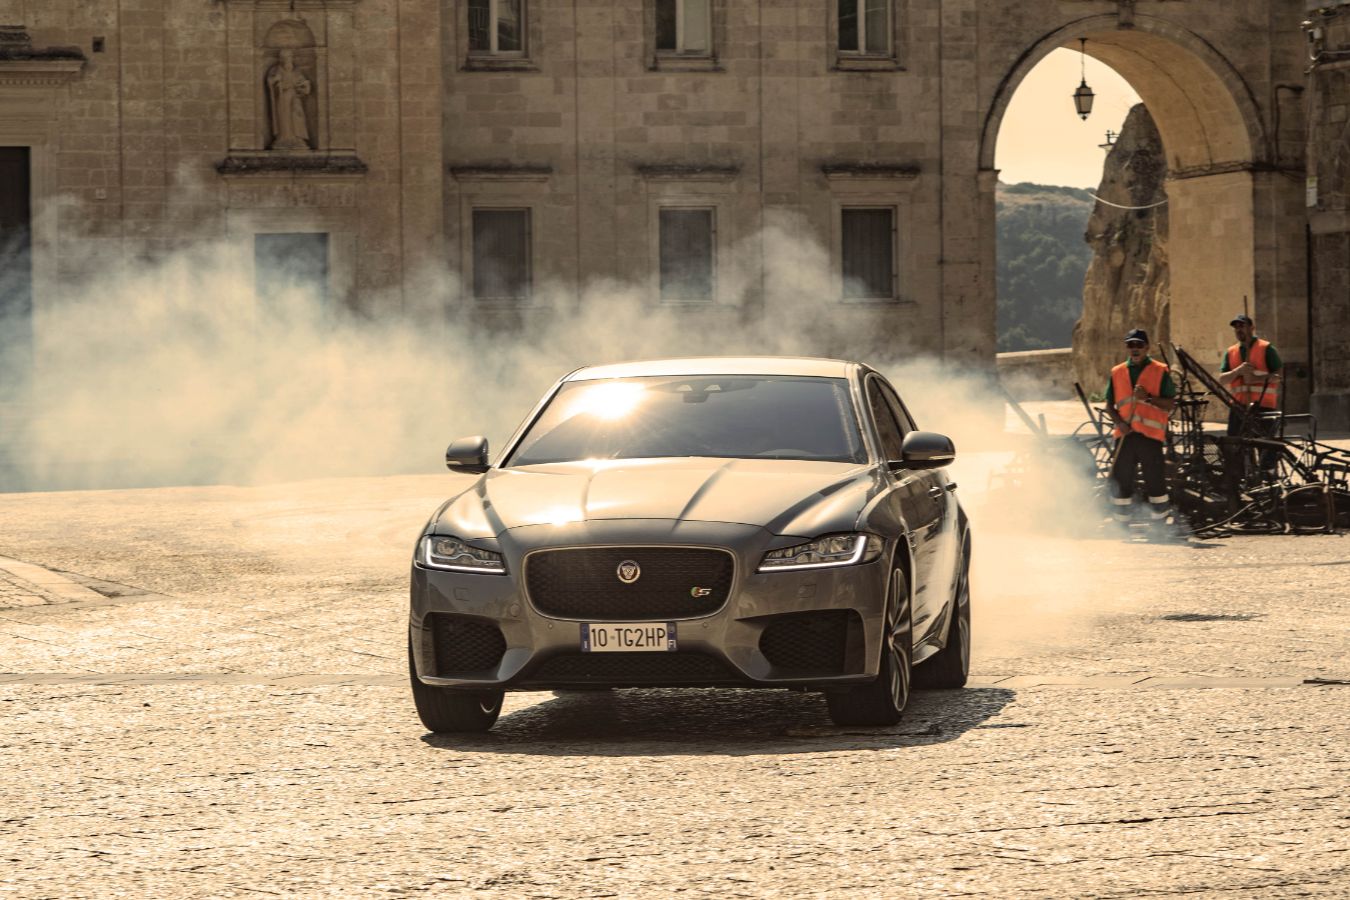 xe hoi 4 Jaguar XF lần đầu kết hợp ngoạn mục với Điệp viên 007 Trong Bộ Phim No Time To Die